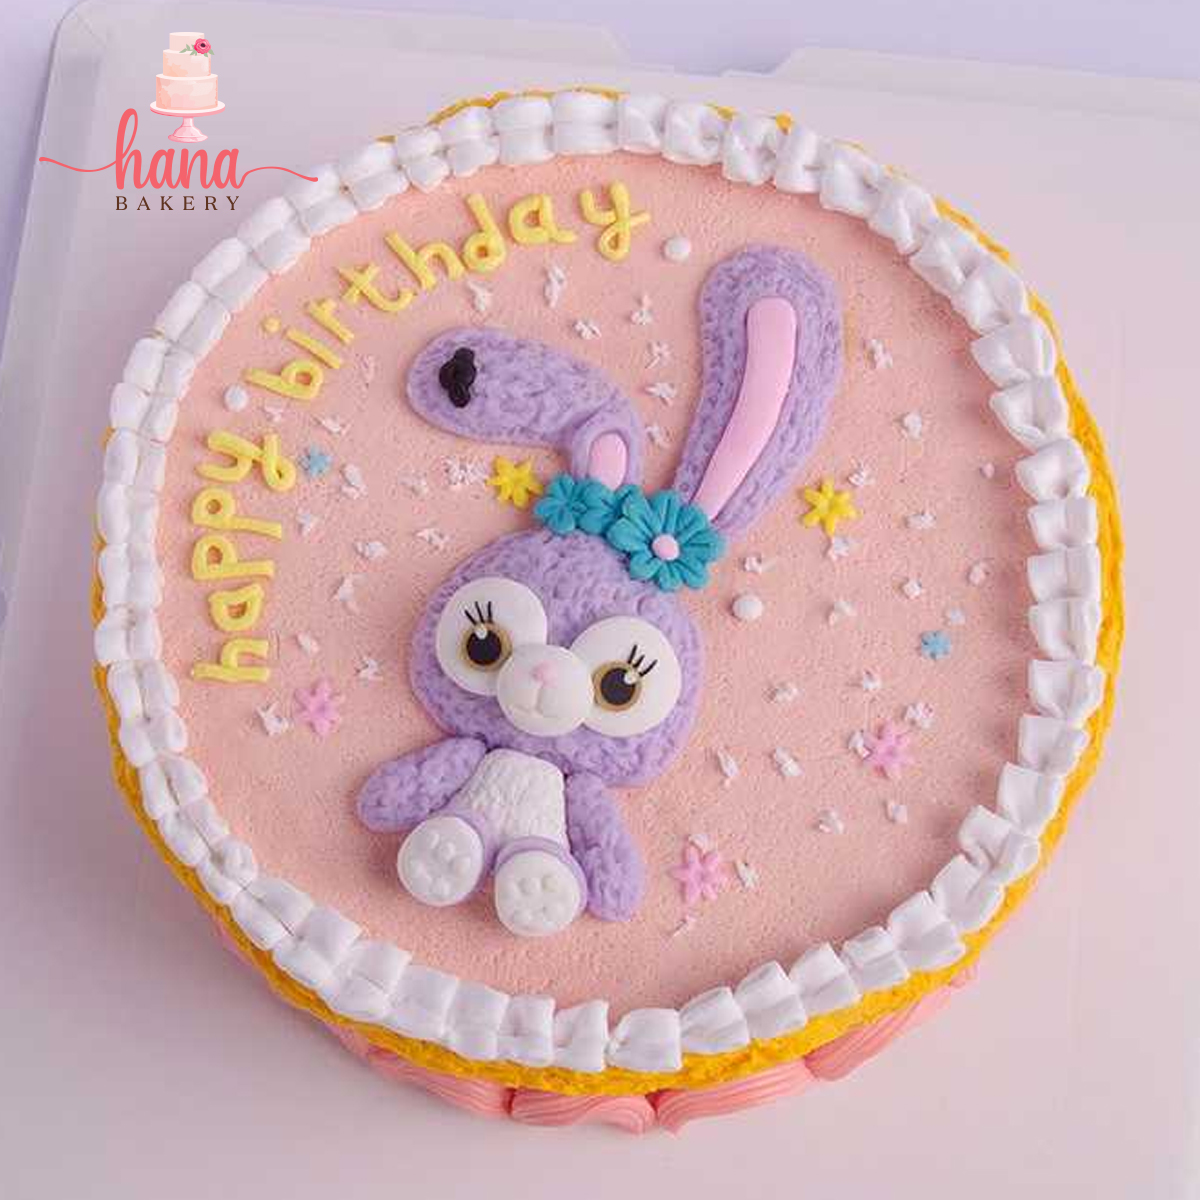 Bánh kem hình thỏ sẽ là món quà tuyệt vời dành cho các bạn nhỏ. Hãy xem những hình ảnh của những chiếc bánh kem hình thỏ đáng yêu và tìm hiểu thêm về các loại bánh kem tuyệt vời này nhé.